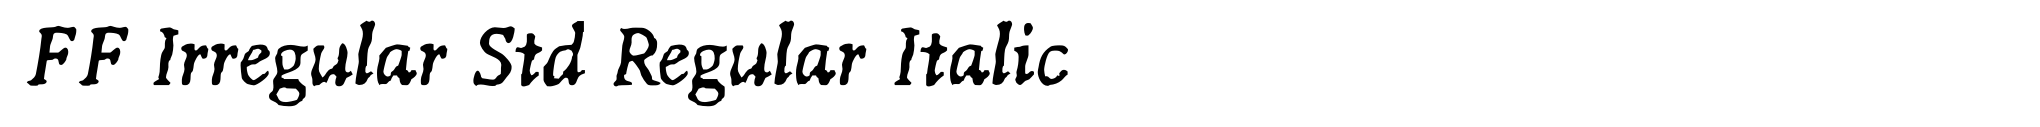 FF Irregular Std Regular Italic image